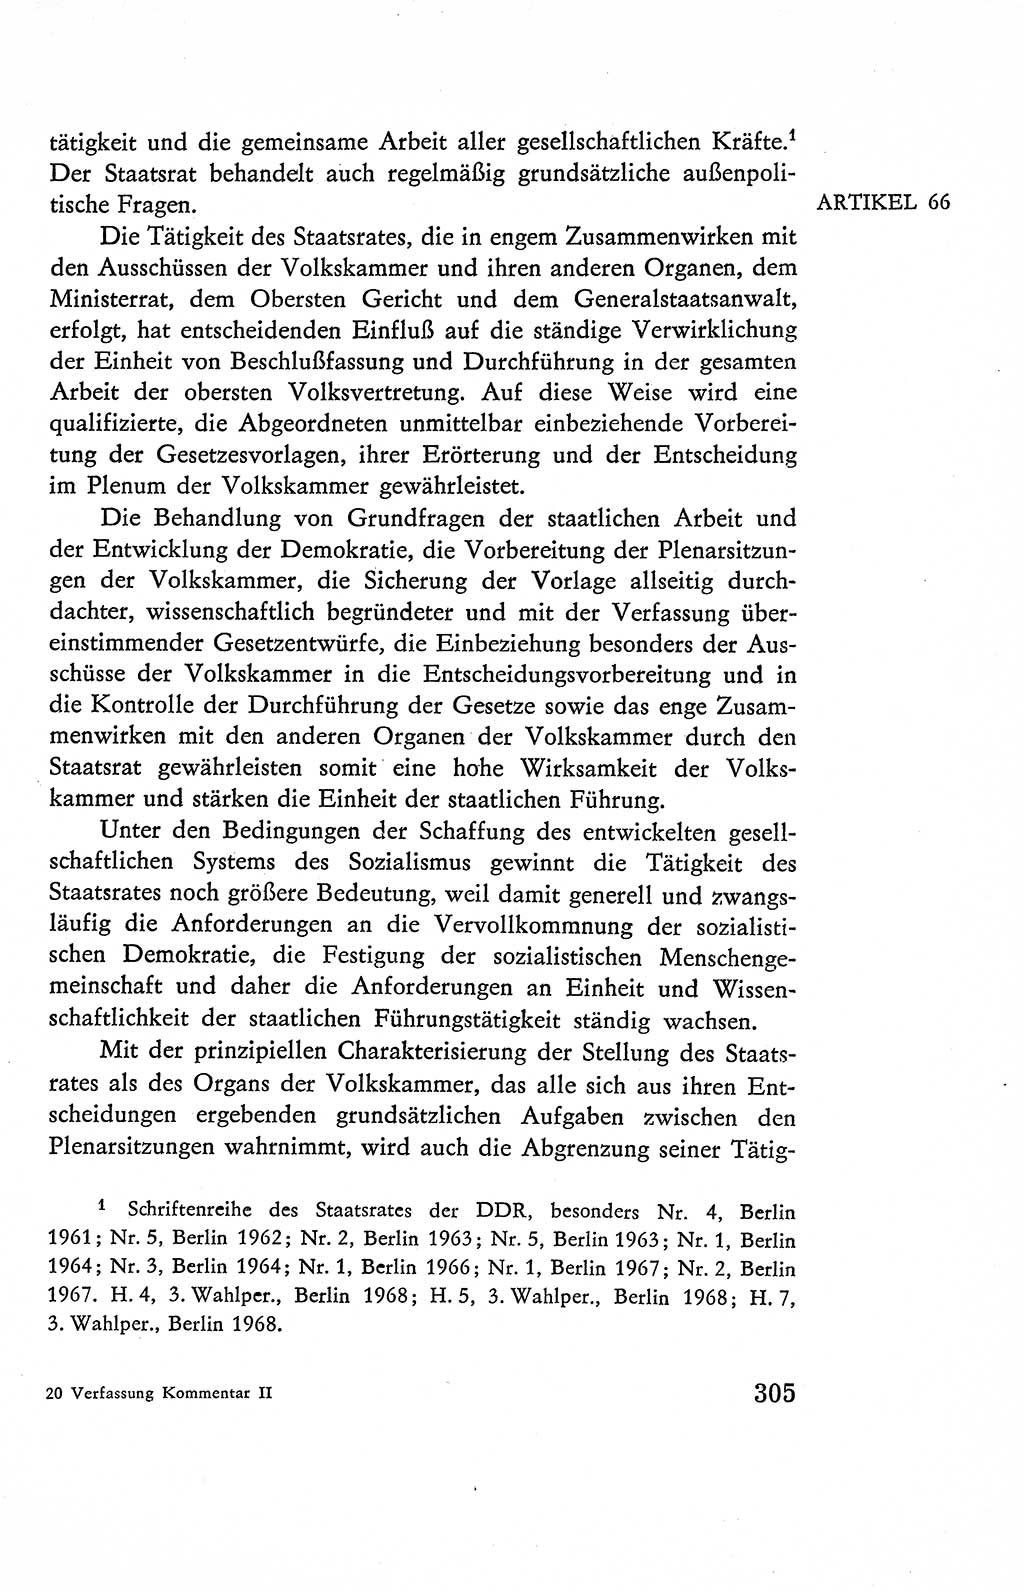 Verfassung der Deutschen Demokratischen Republik (DDR), Dokumente, Kommentar 1969, Band 2, Seite 305 (Verf. DDR Dok. Komm. 1969, Bd. 2, S. 305)